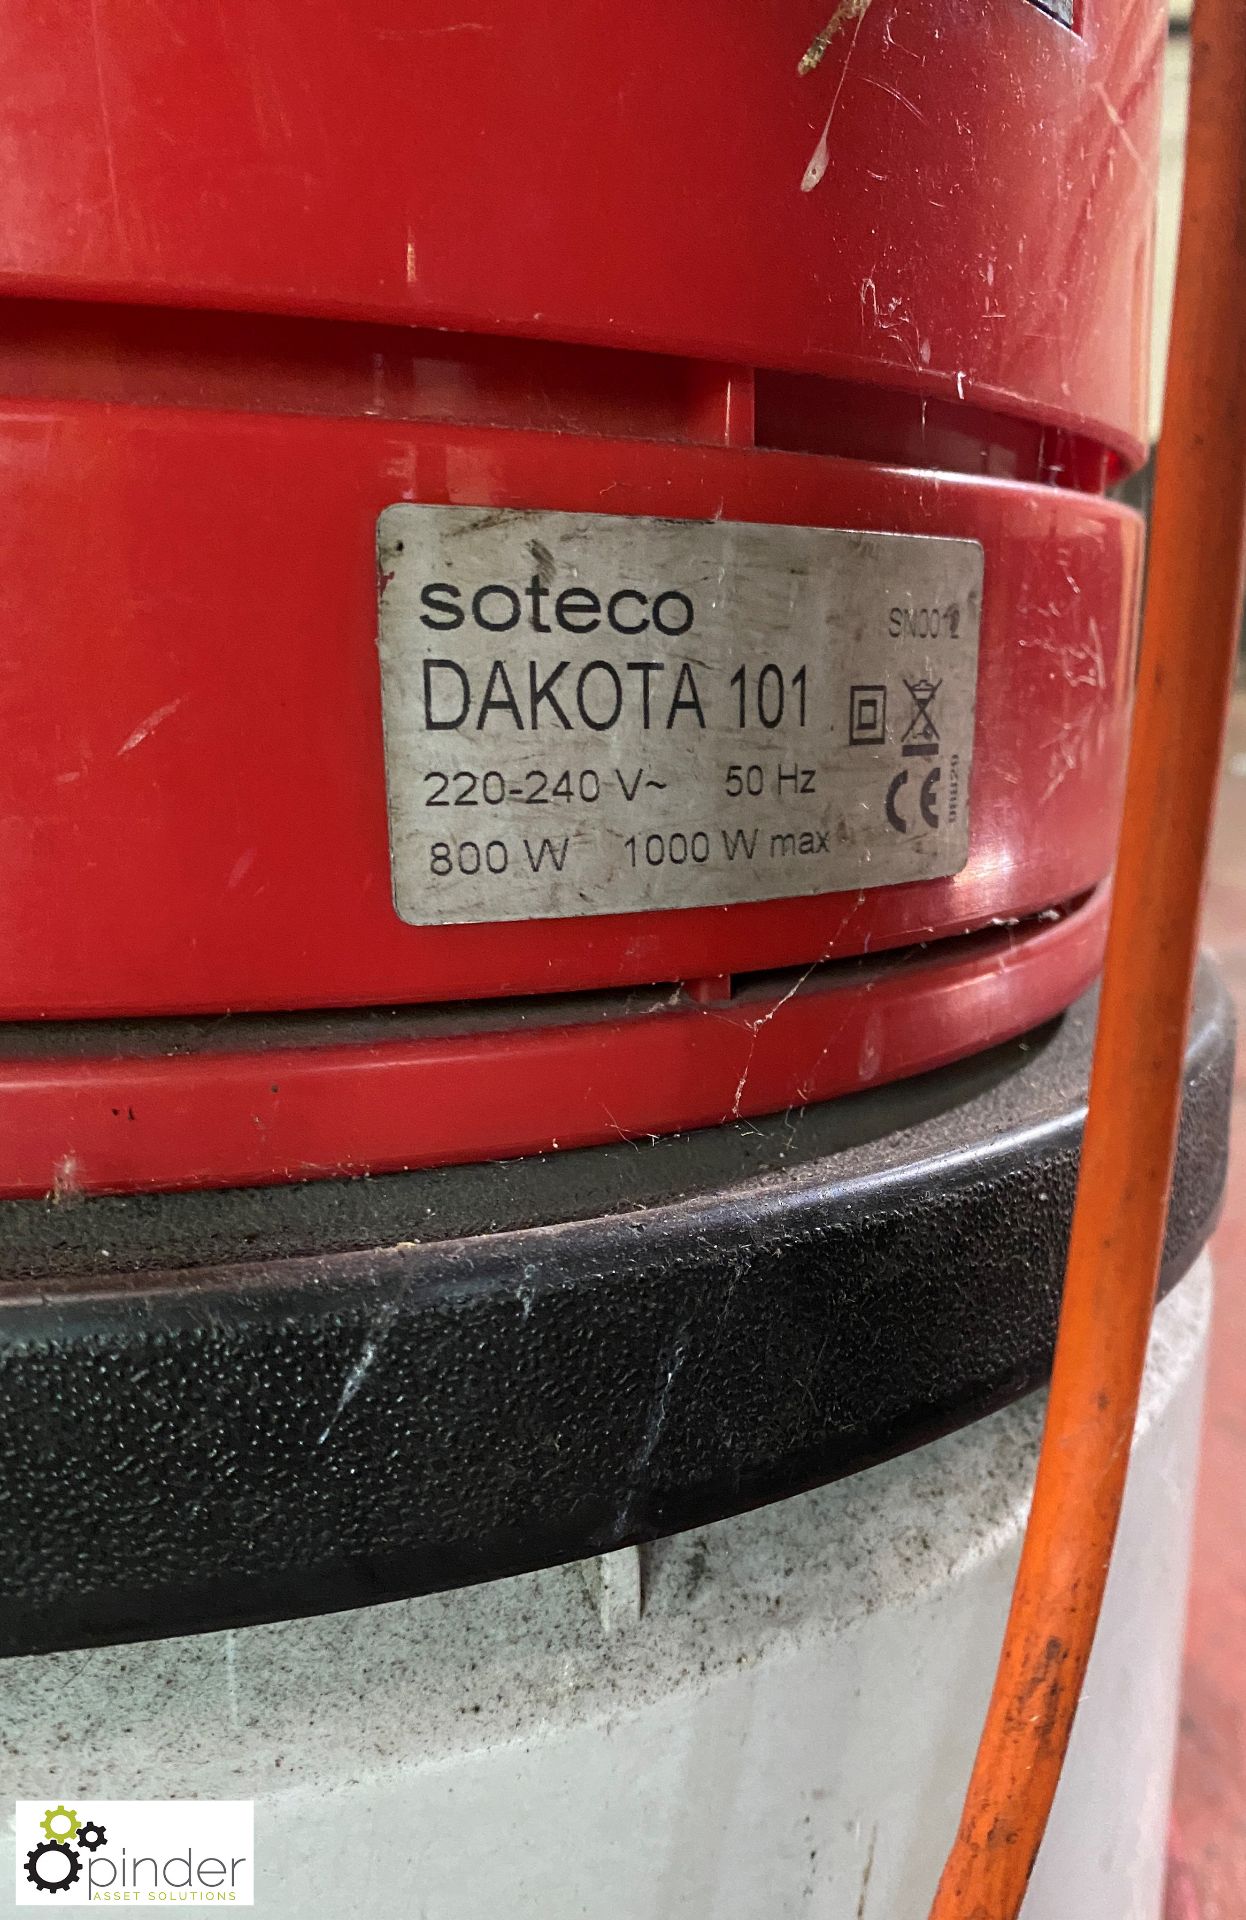 Suteco Dakota 101 Vacuum Cleaner - Image 3 of 4